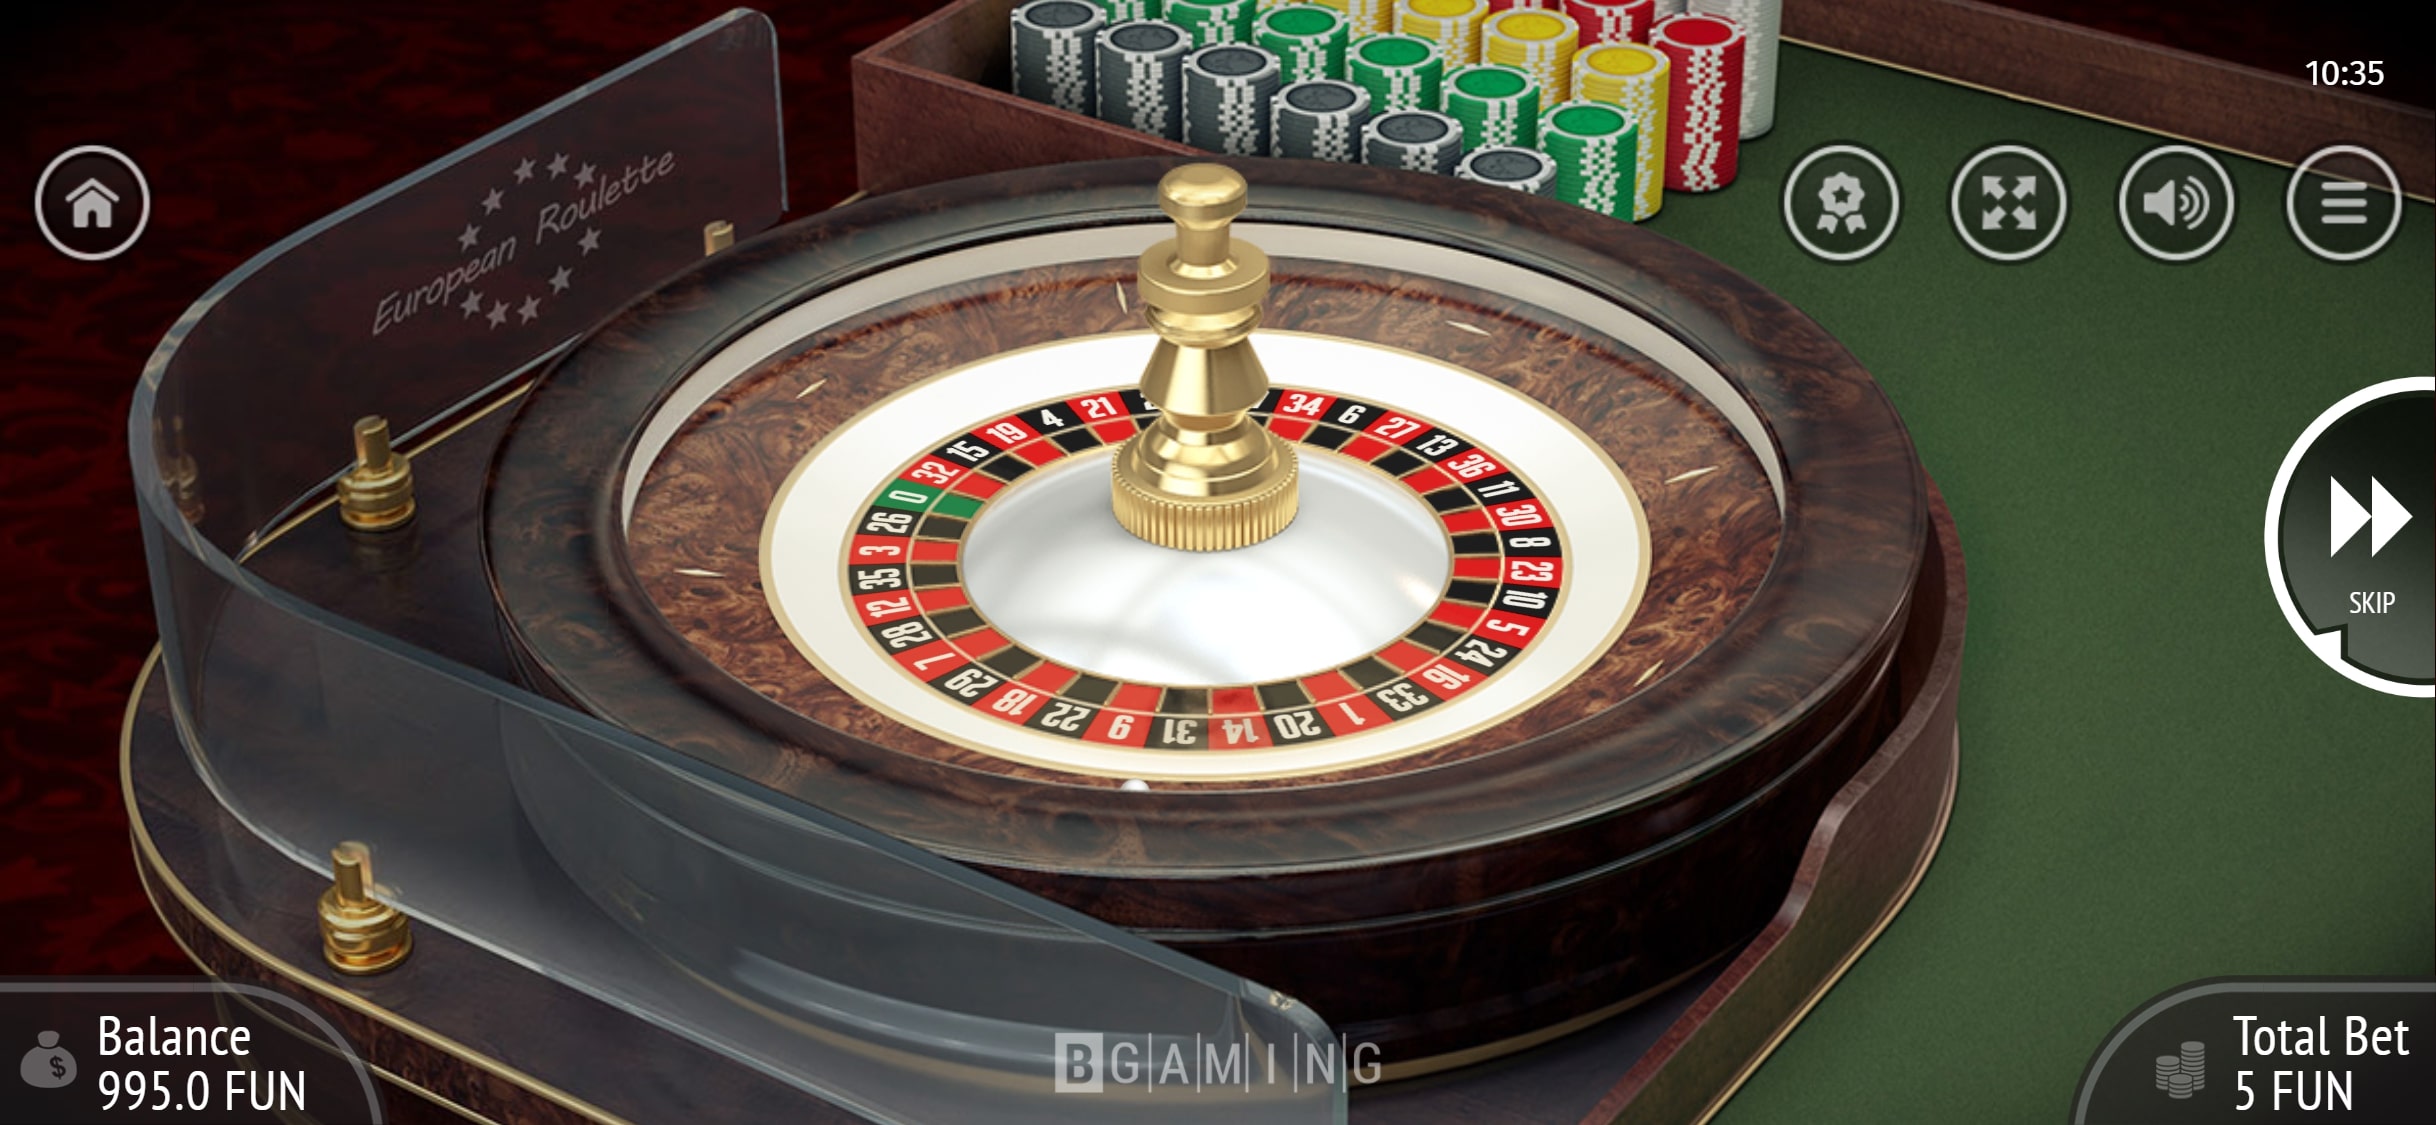 Cobra Casino Mobile Casino Games Review